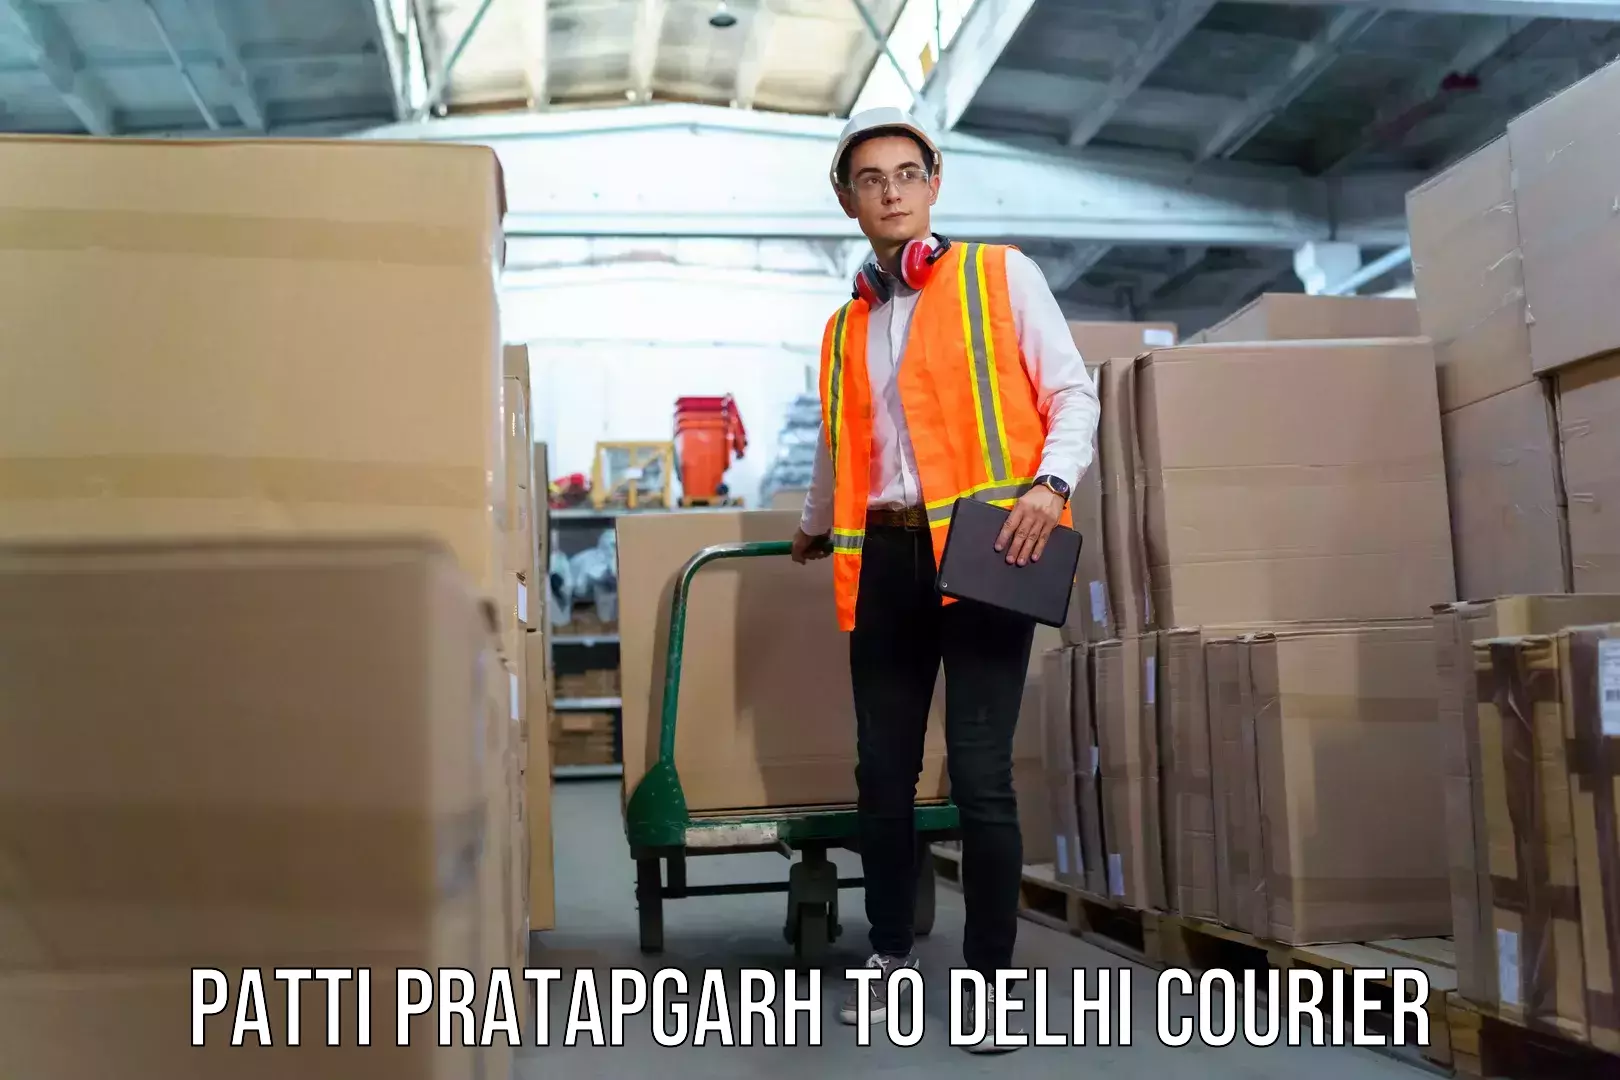 Luggage delivery providers Patti Pratapgarh to Delhi